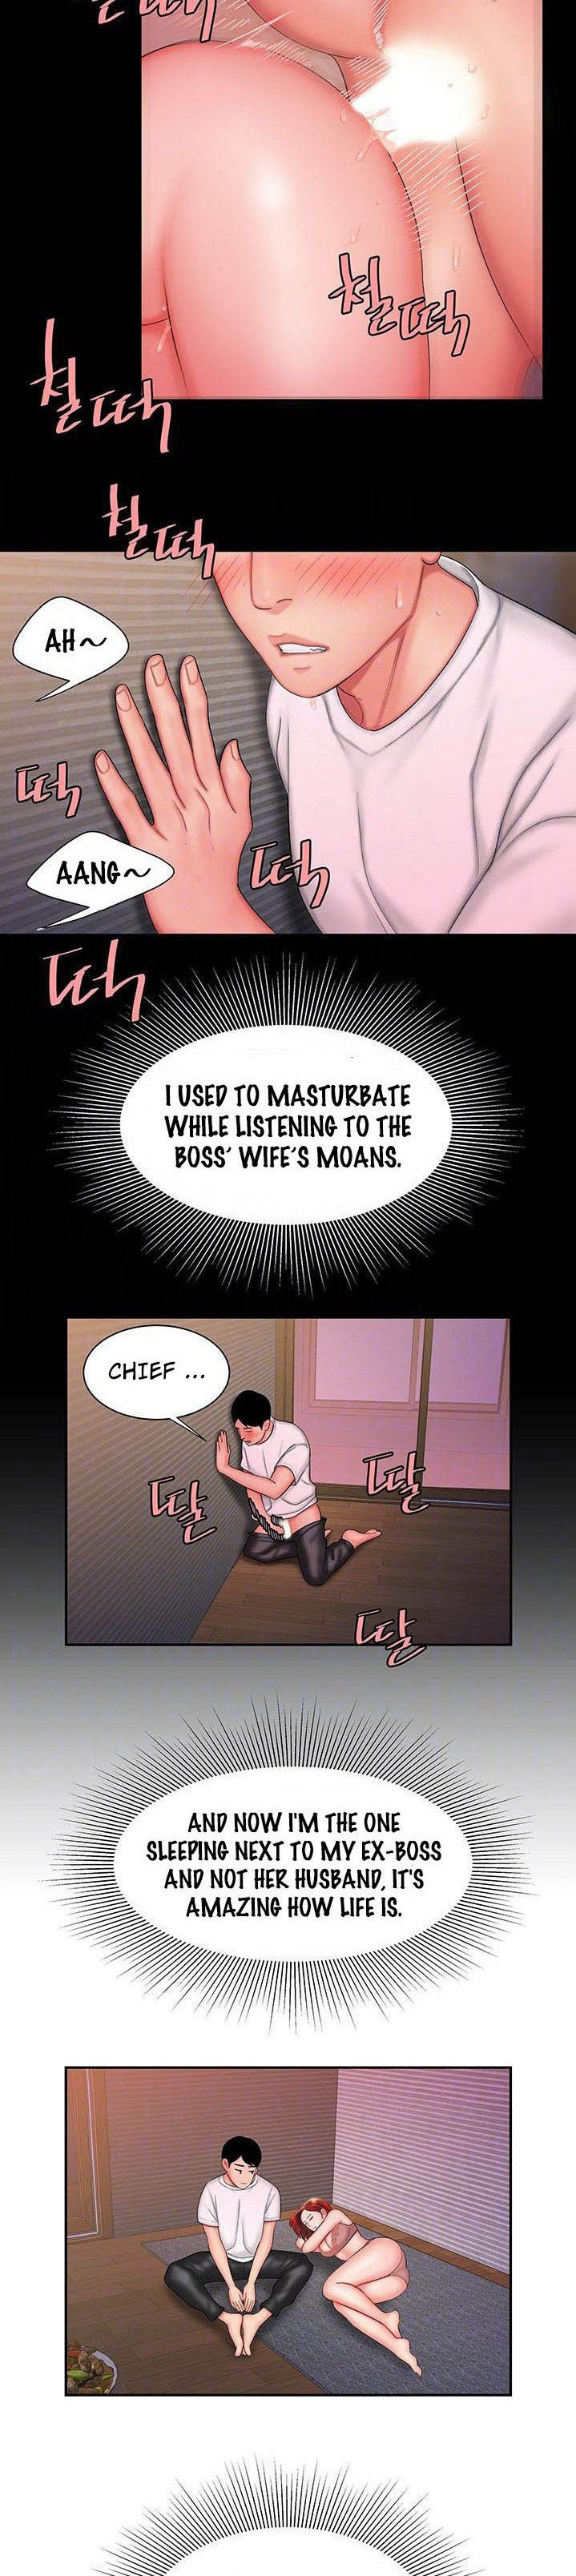 Watch image manhwa Delivery Man - Chapter 25 - SlUEISrwJUQQG8J - ManhwaXX.net